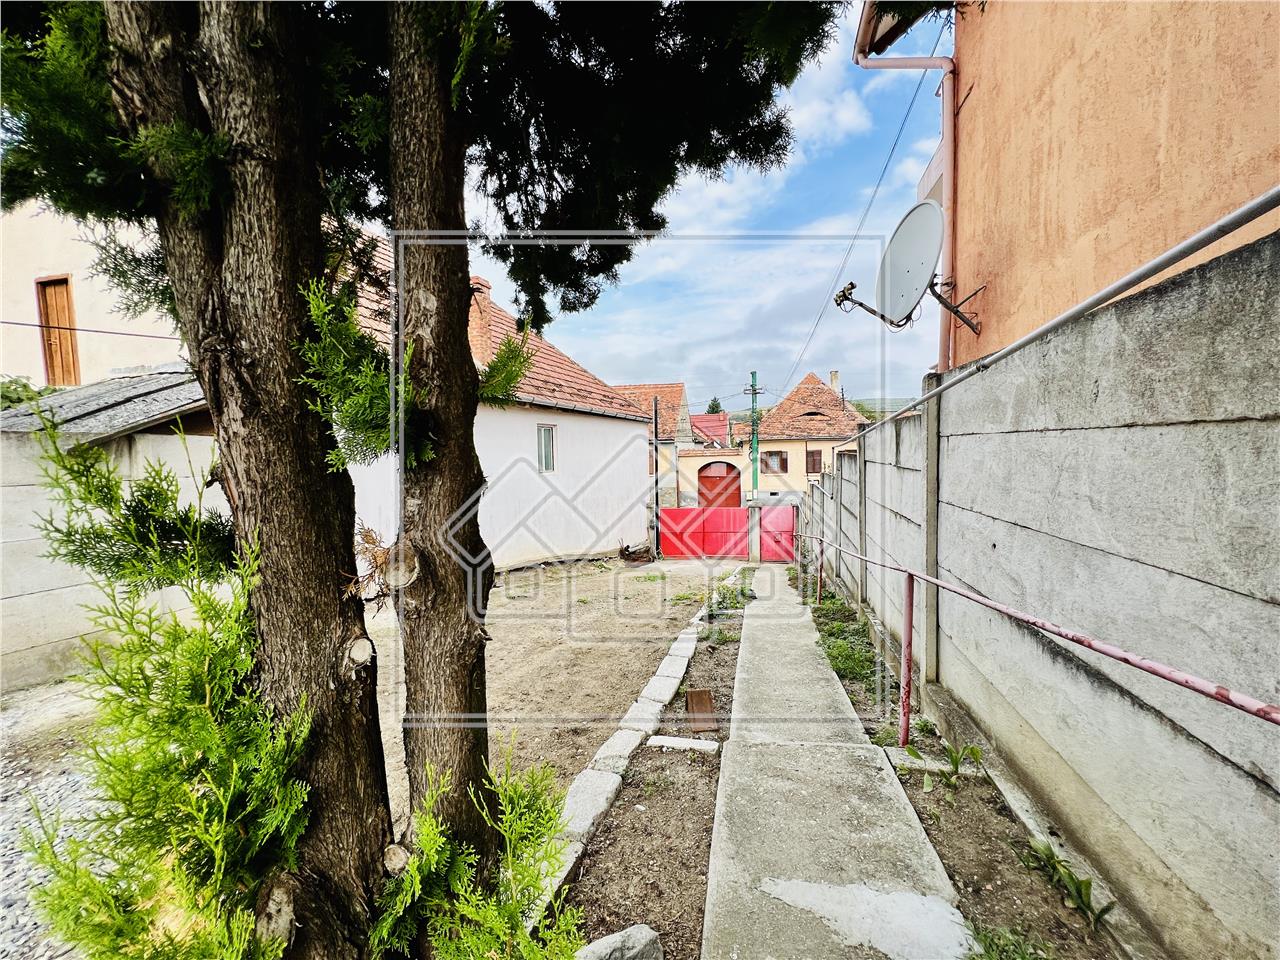 Casa de vanzare in Sibiu - Cisnadie - individuala, 1300 mp teren